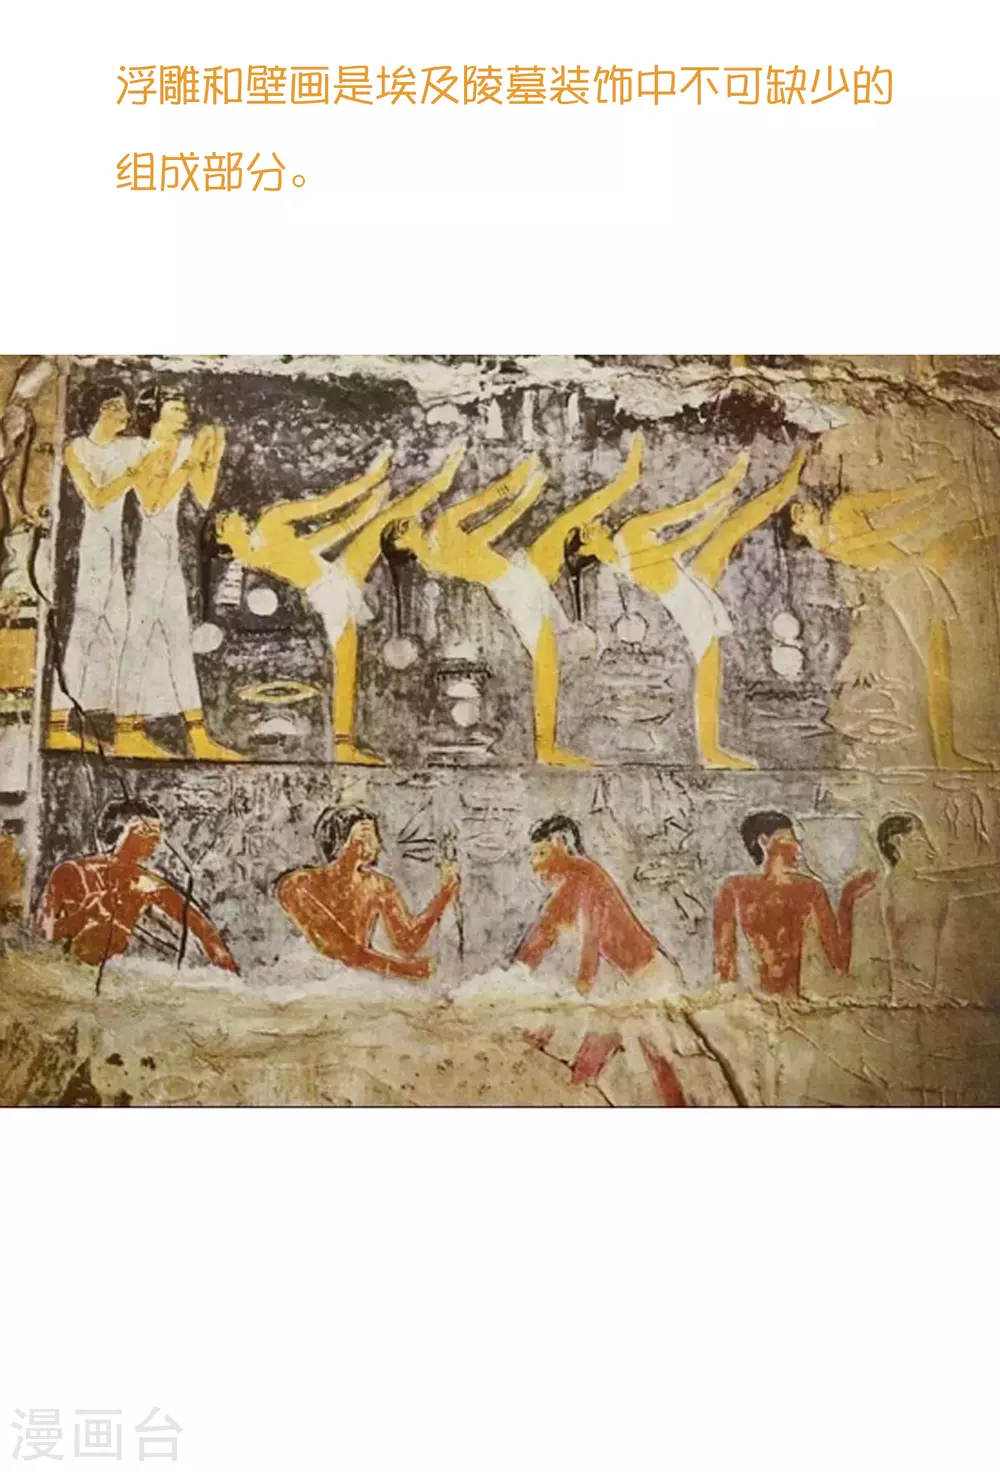 王的第一寵後 - 王的茶話會38 古埃及的壁畫文化 - 1